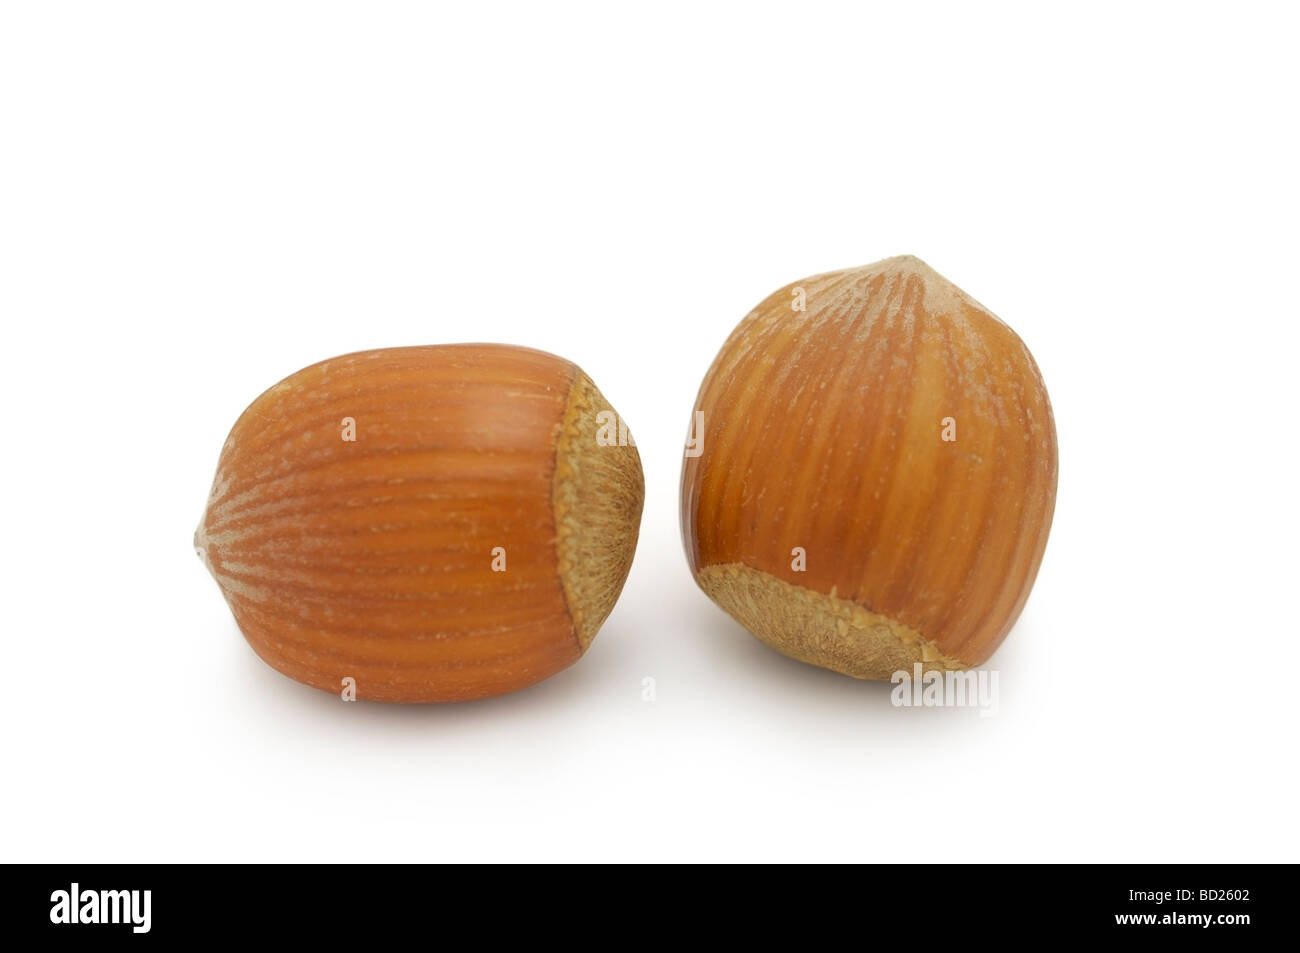 Hazelnuts / Filberts Stock Photo